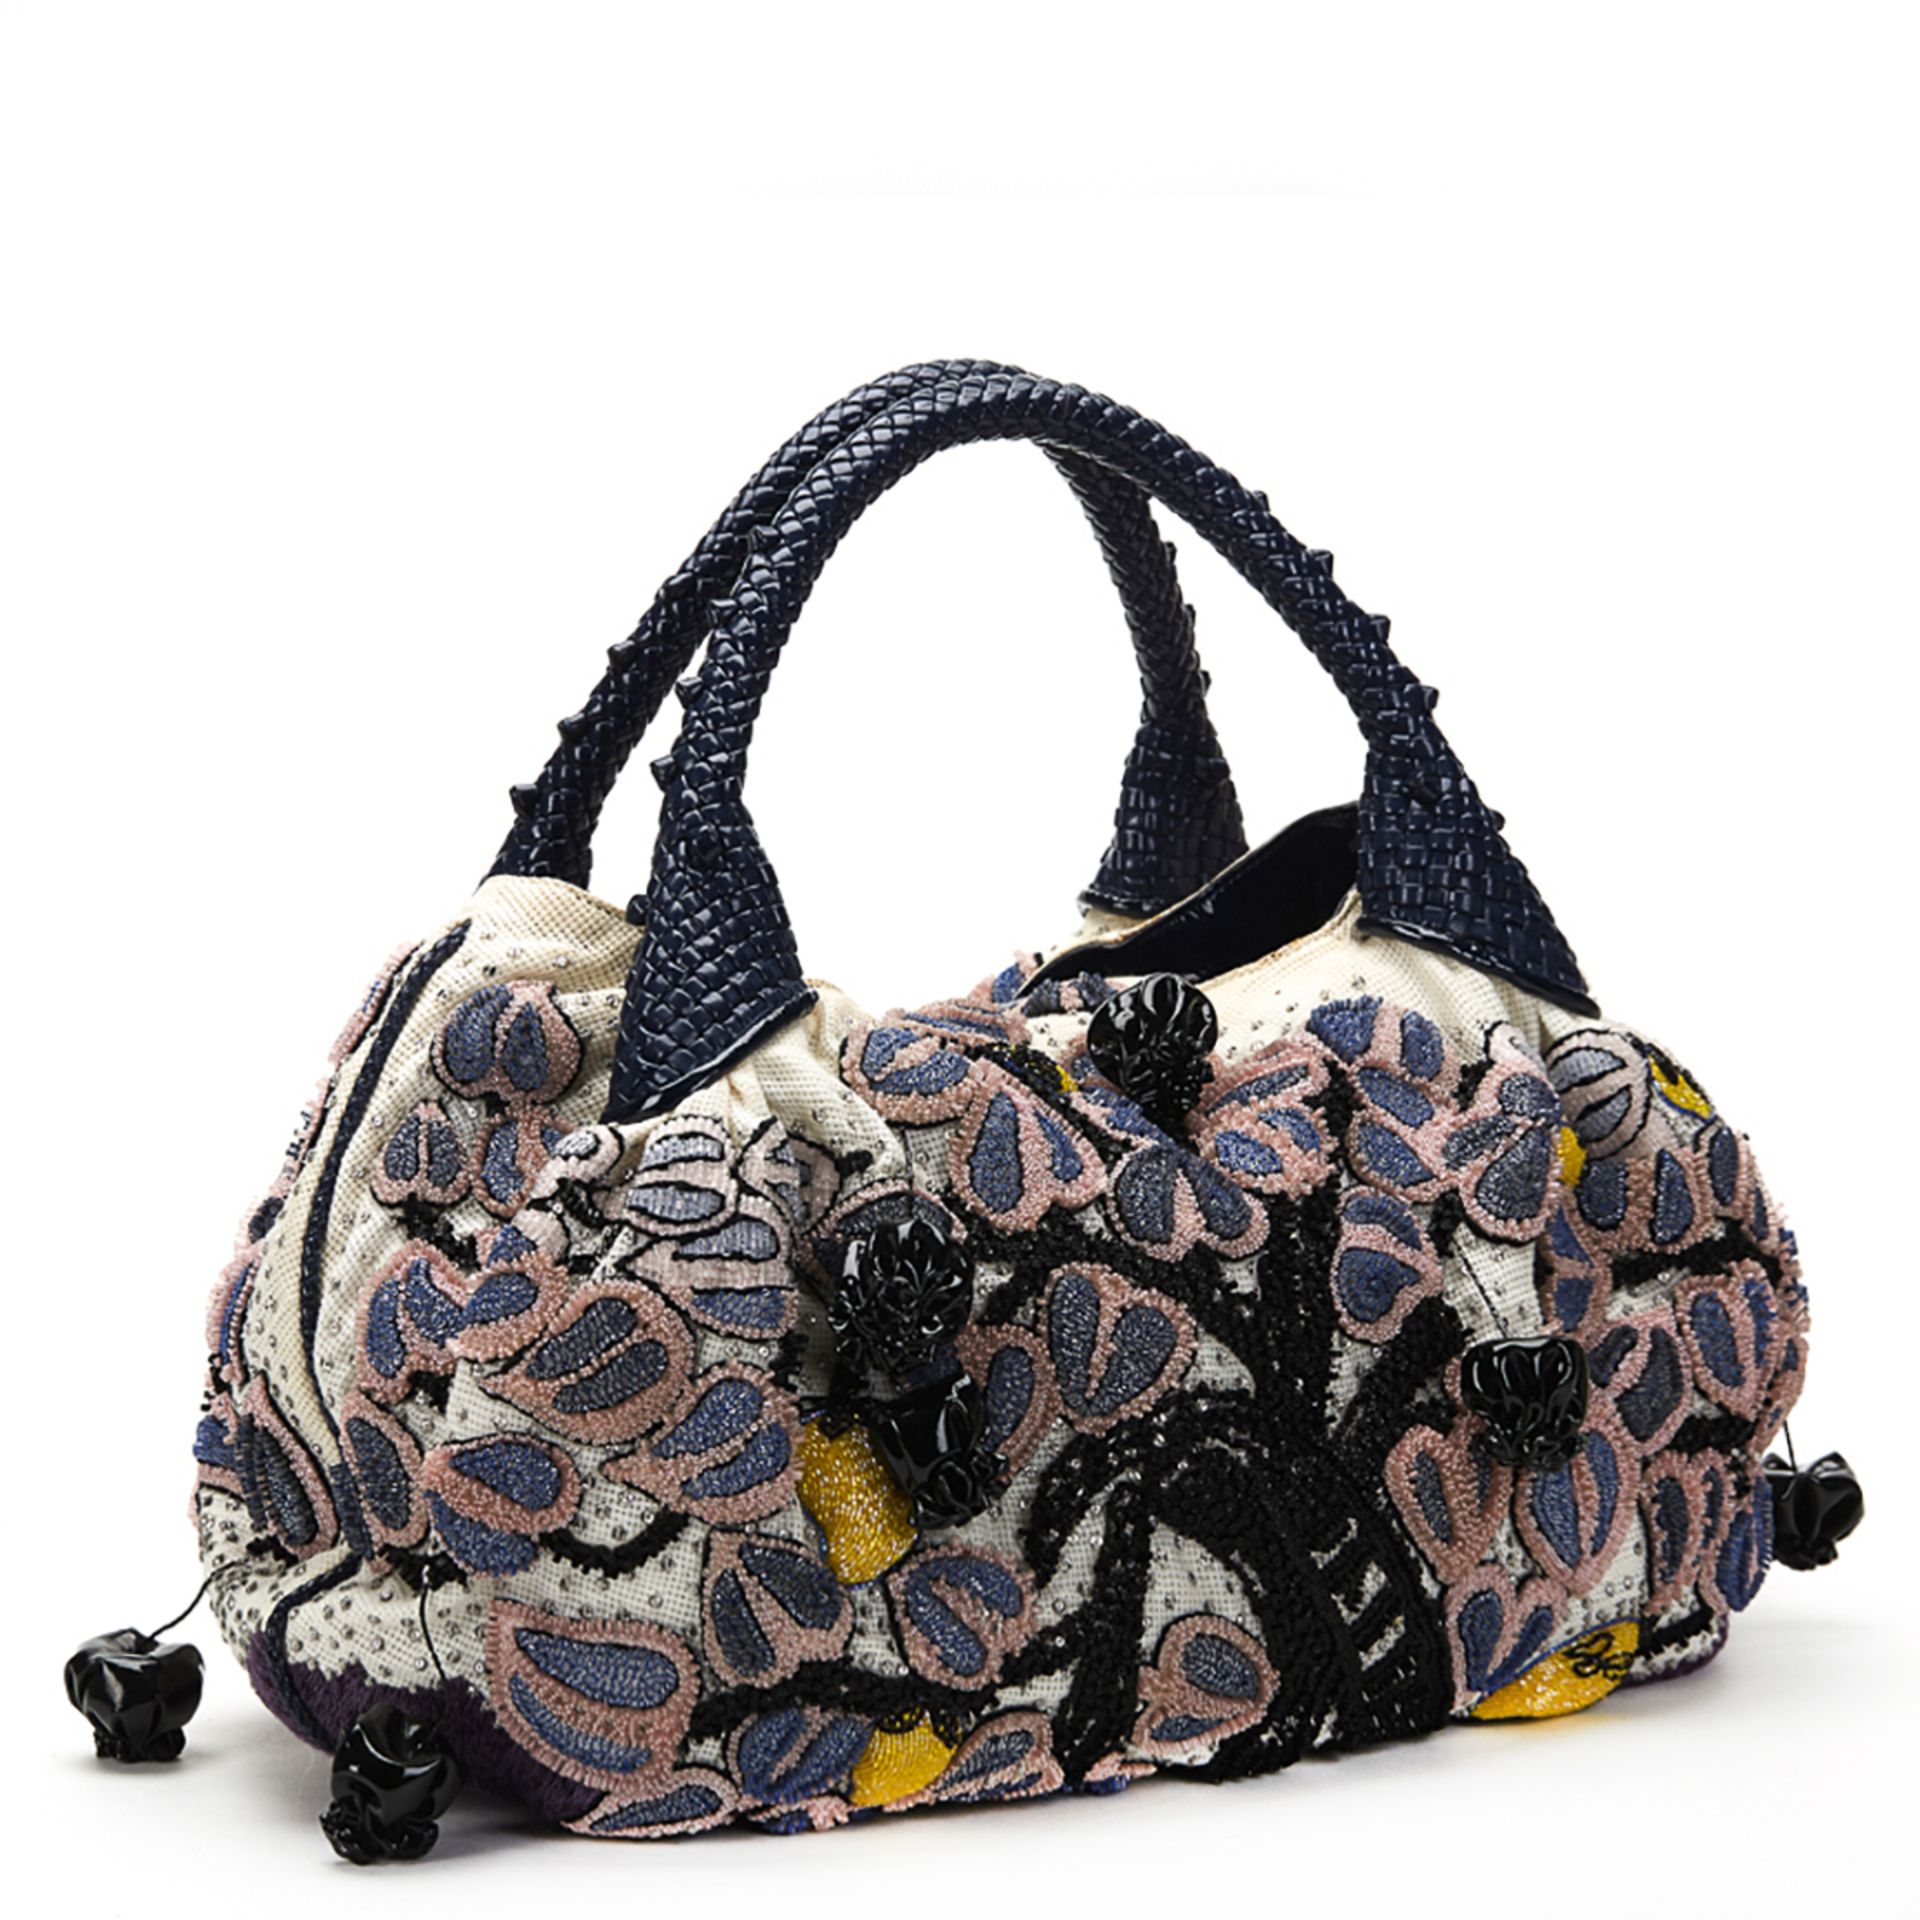 FENDI Spy Bag , - Multicolour Embellished Floral Spy Bag   TYPE Tote, Shoulder SERIAL NUMBER 2415- - Image 6 of 16